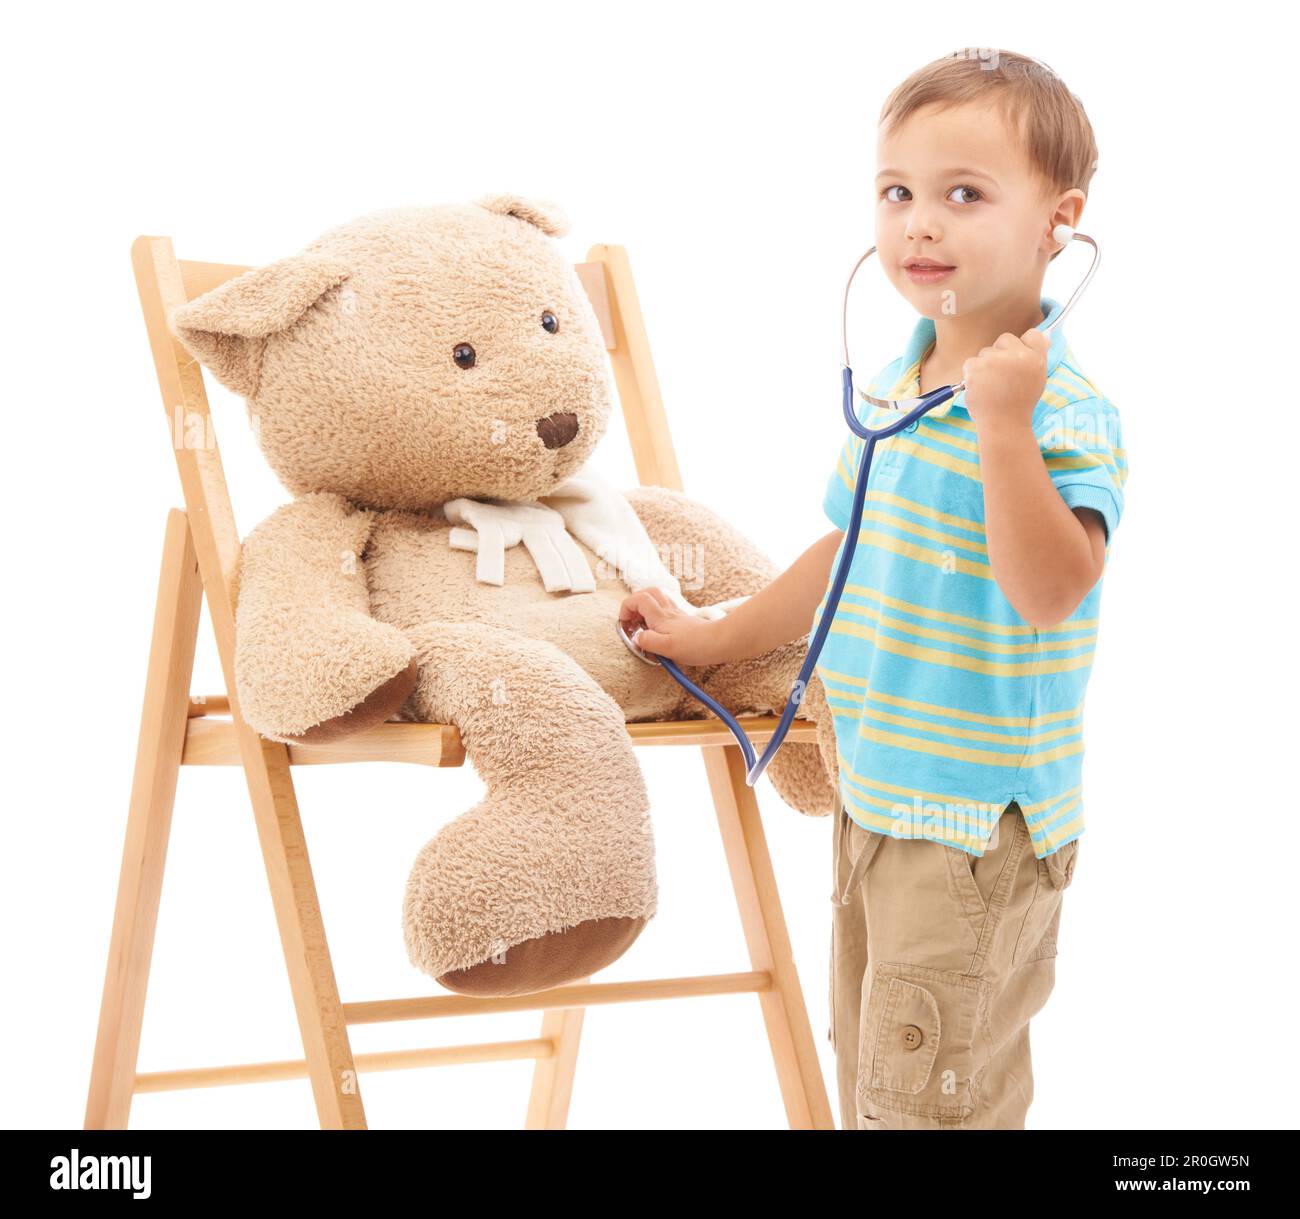 Medico di gioco. Foto studio di un giovane ragazzo che gioca con il suo orsacchiotto e uno stetoscopio. Foto Stock